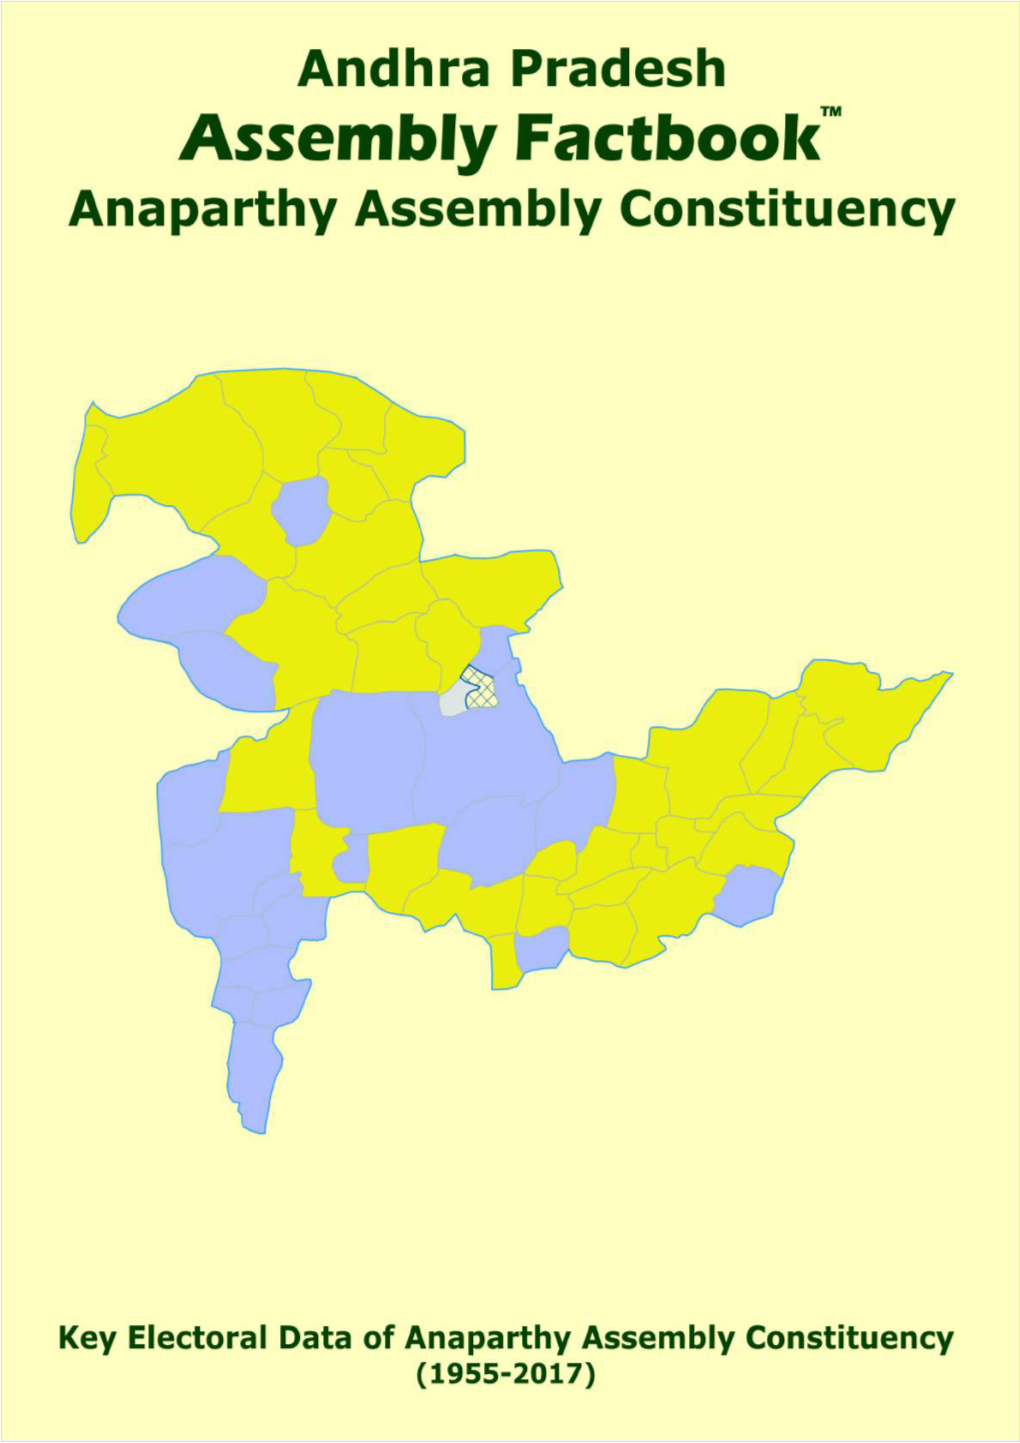 Anaparthy Assembly Andhra Pradesh Factbook